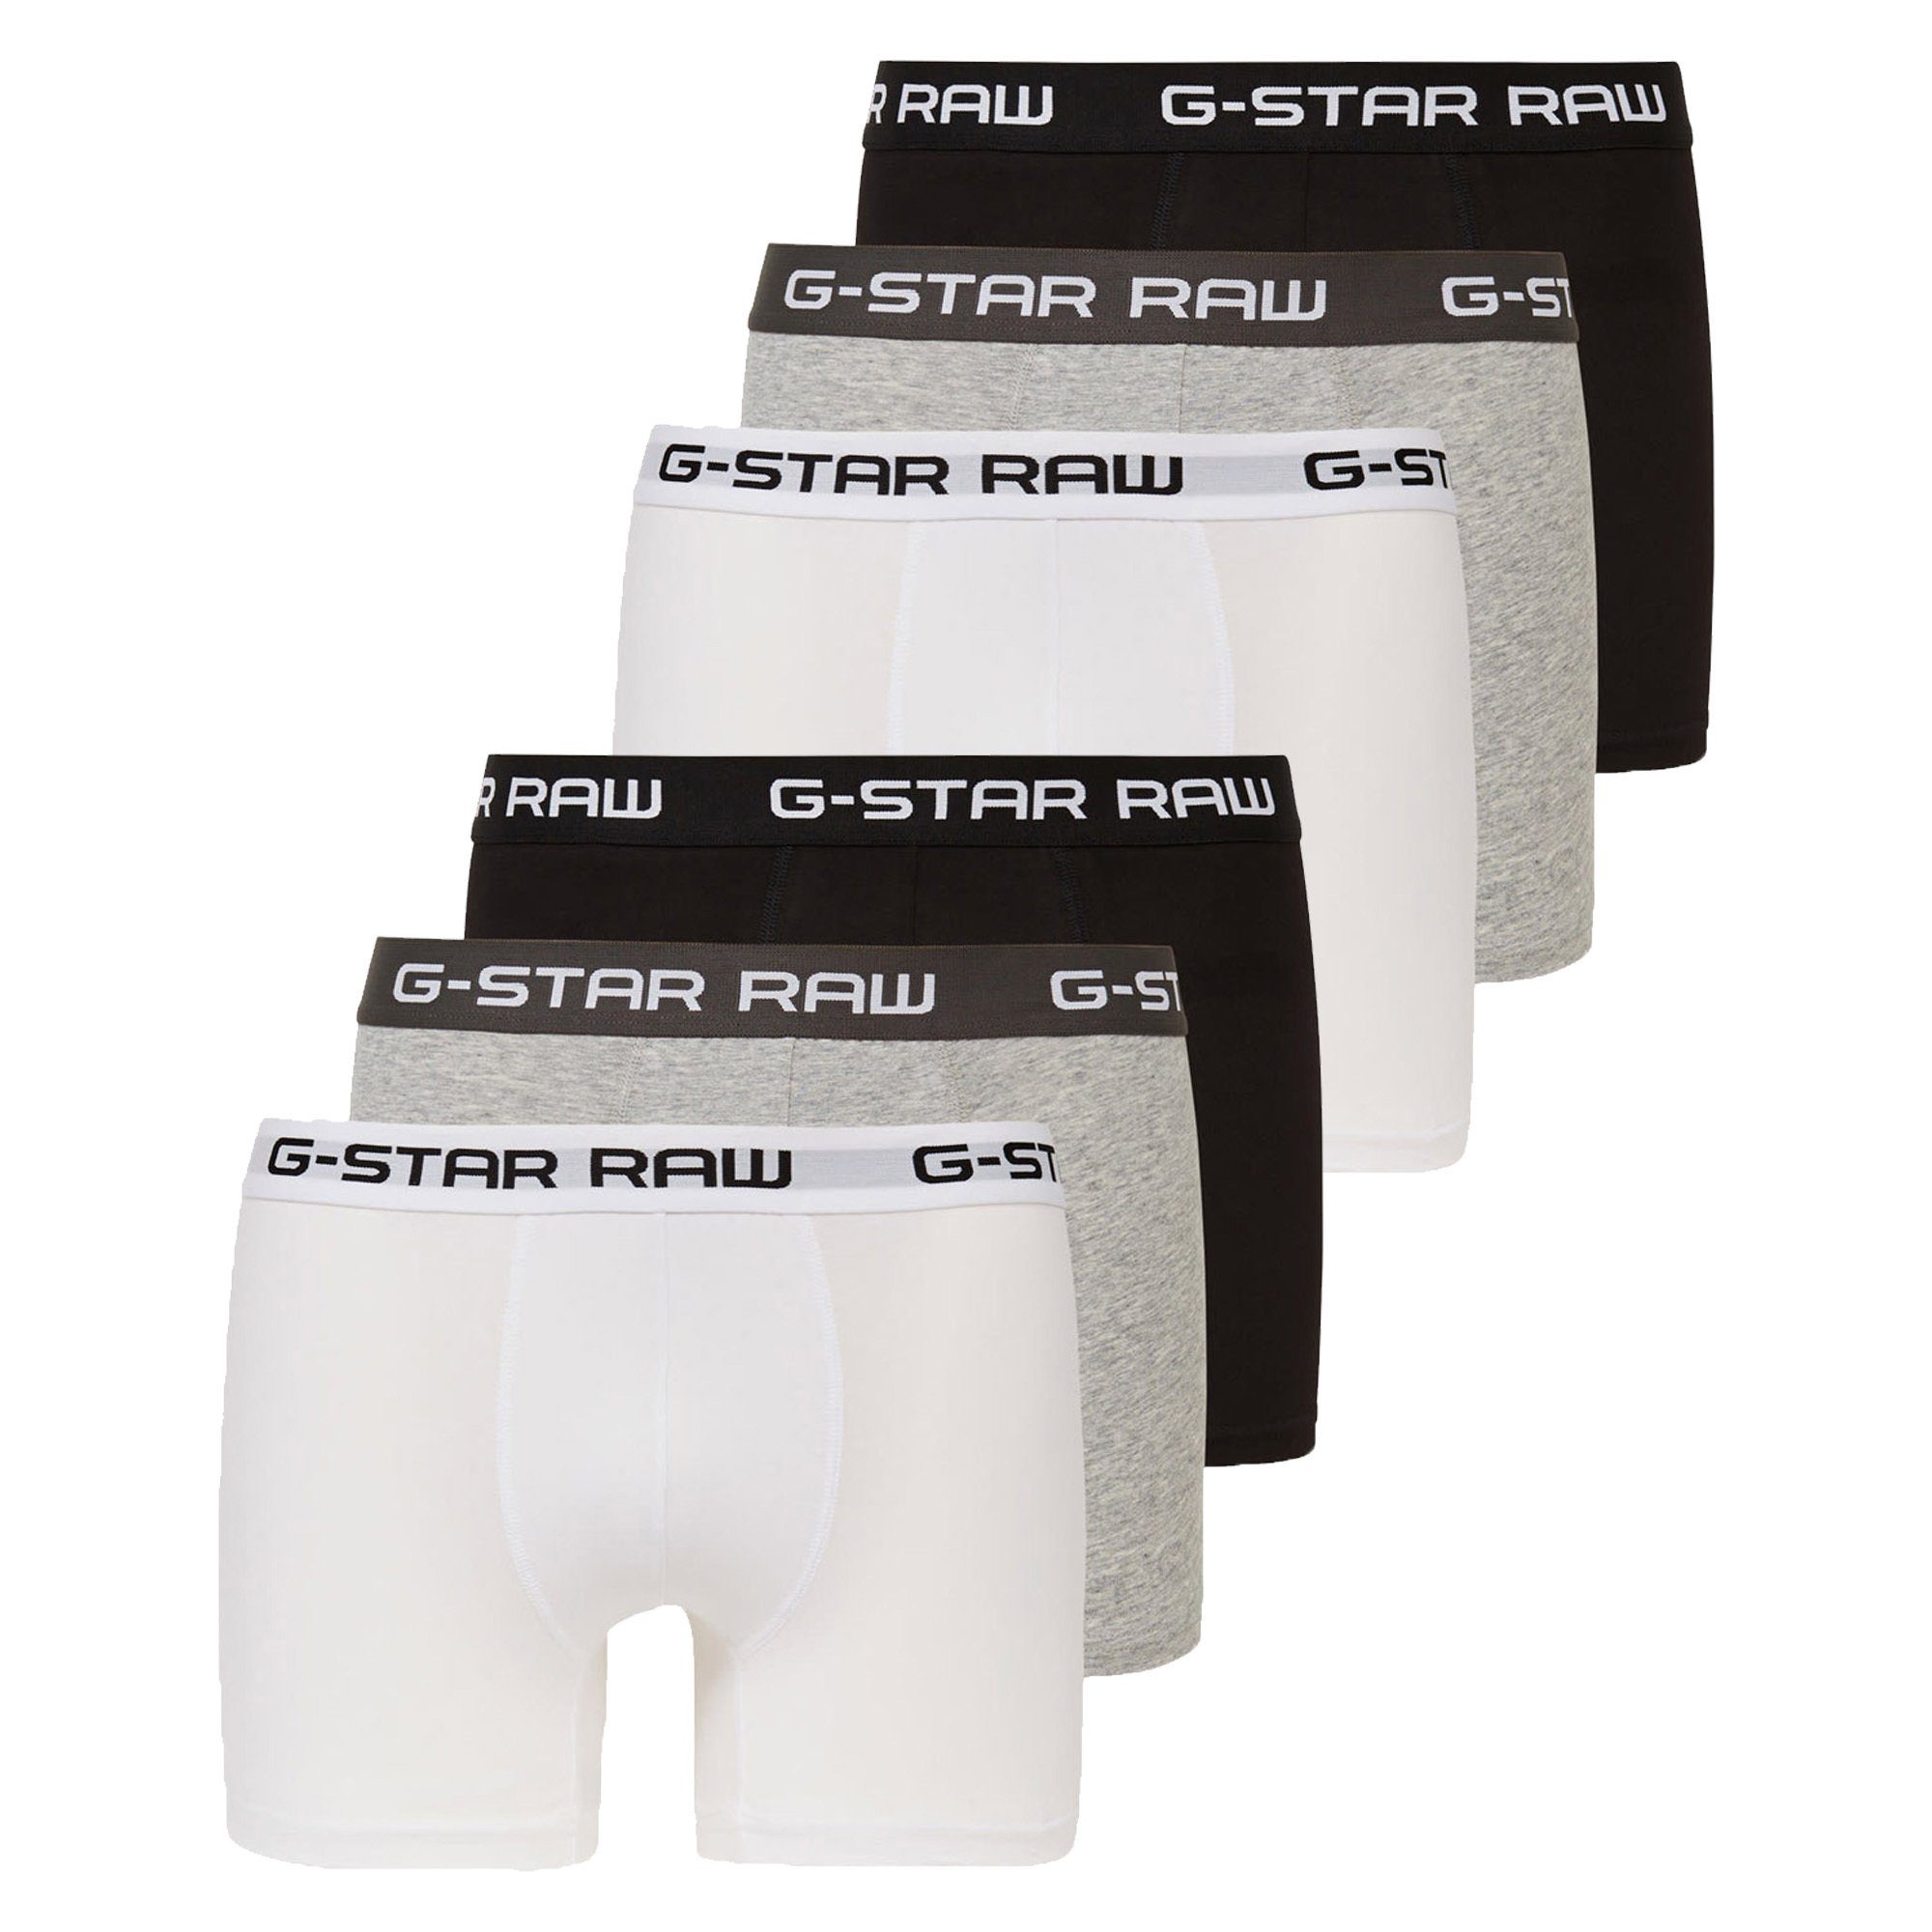 G-Star RAW Boxer Herren Shorts 6er Pack - Classic Trunk, Logobund Grau/Schwarz/Weiß